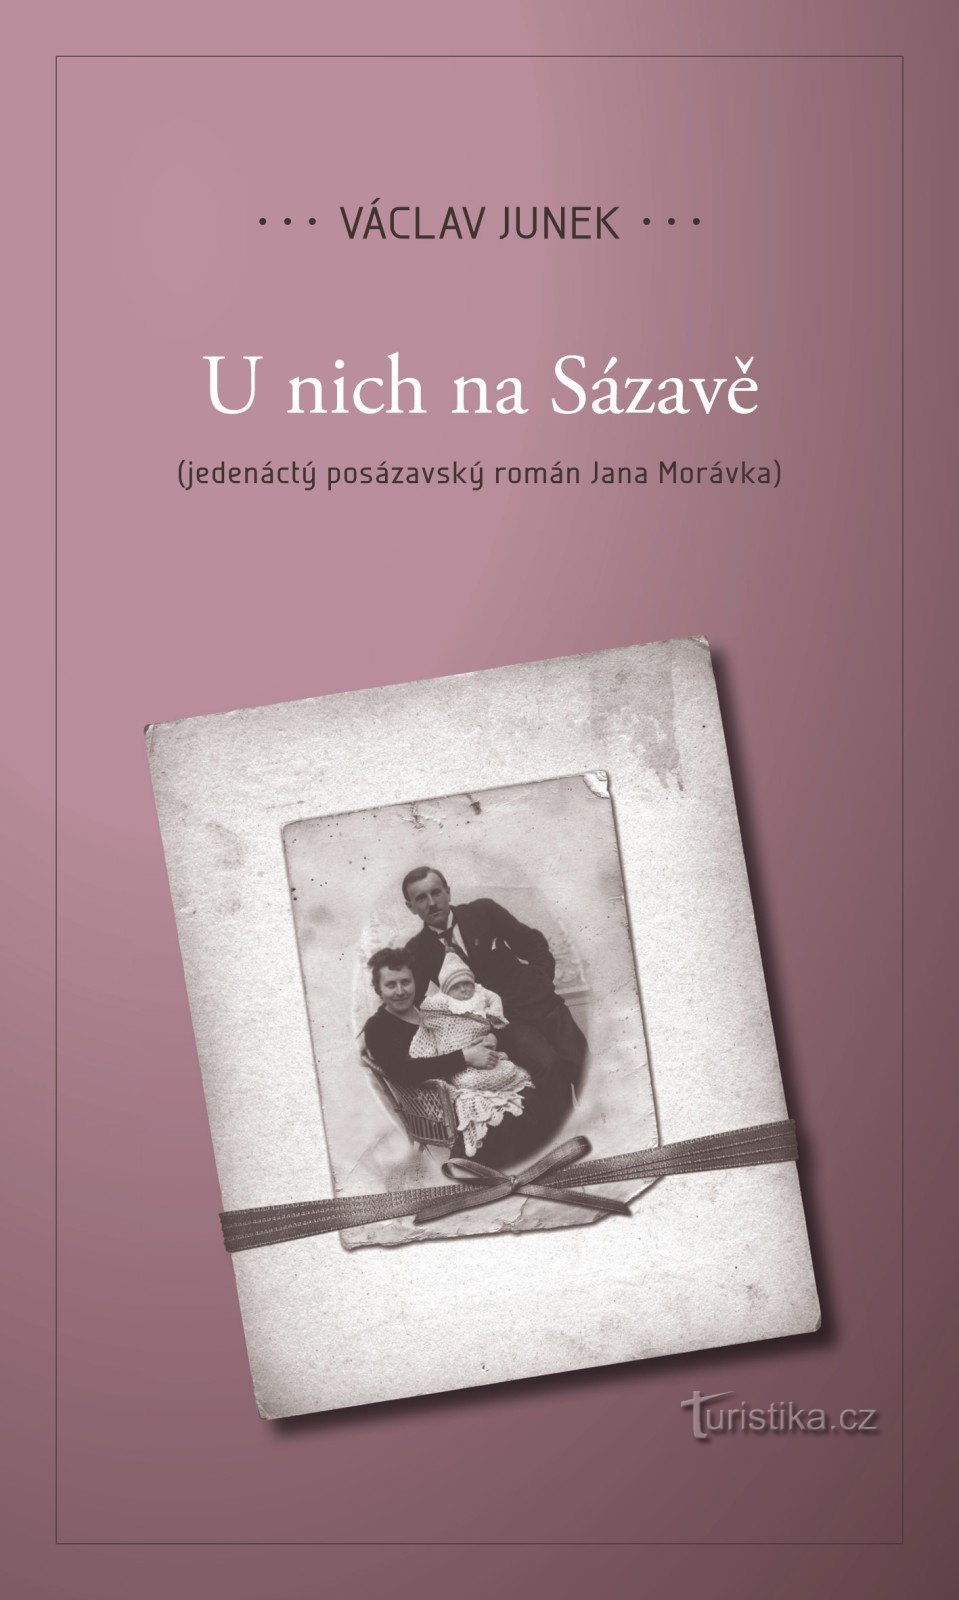 我们将展示 Václav Junka 的第十一部小说 U nich Na Sázavá